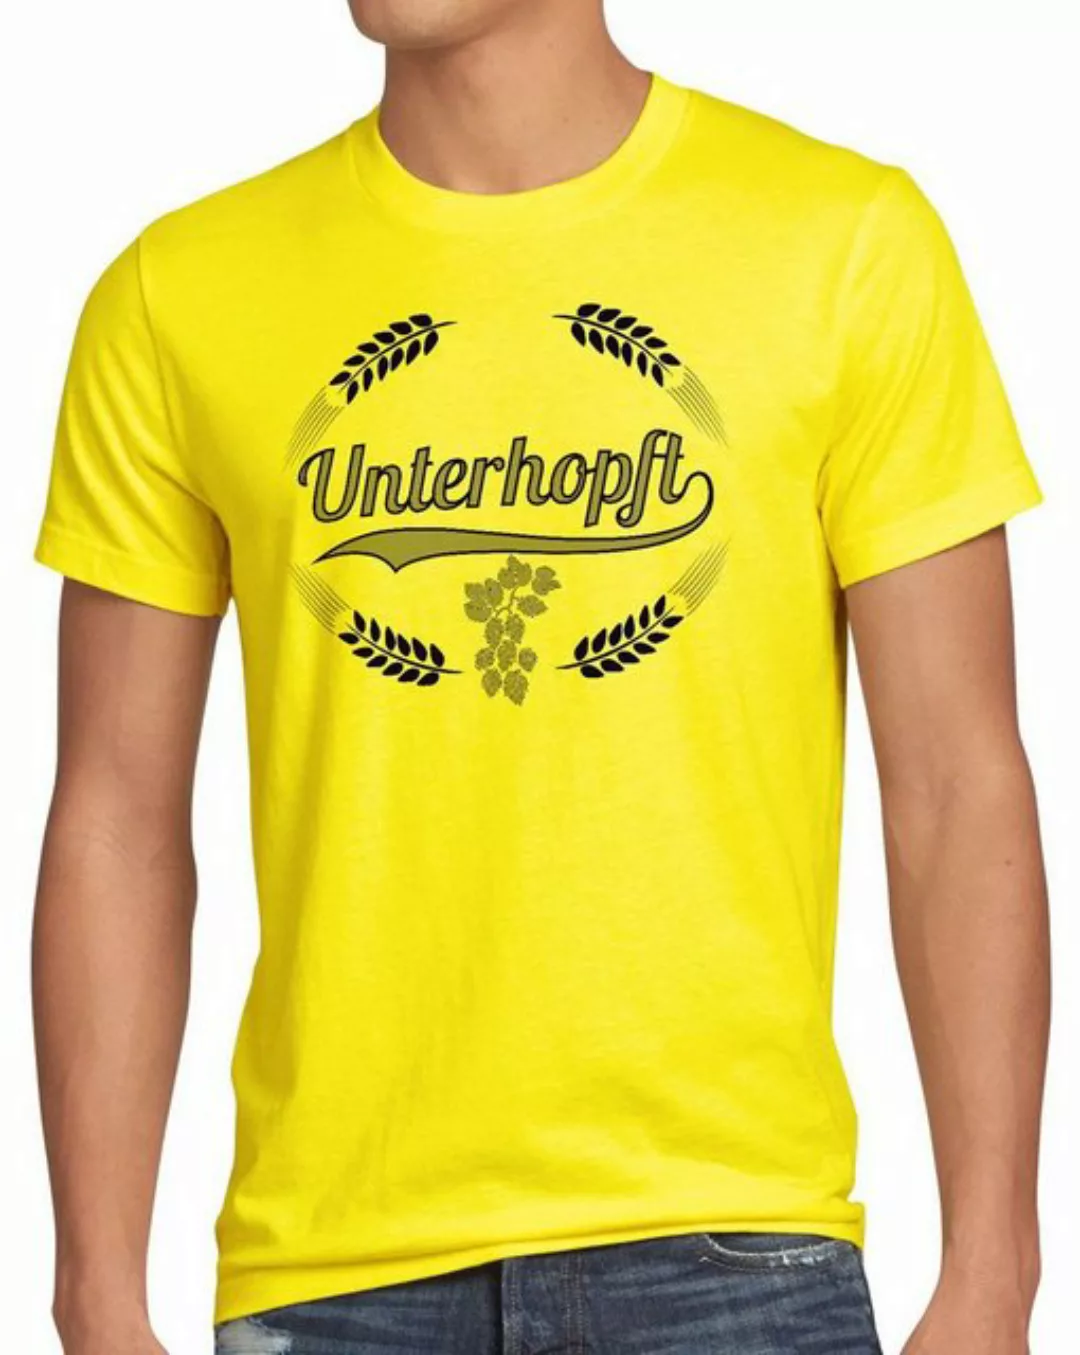 style3 Print-Shirt Herren T-Shirt Unterhopft Kult Shirt Funshirt Bier Hopfe günstig online kaufen